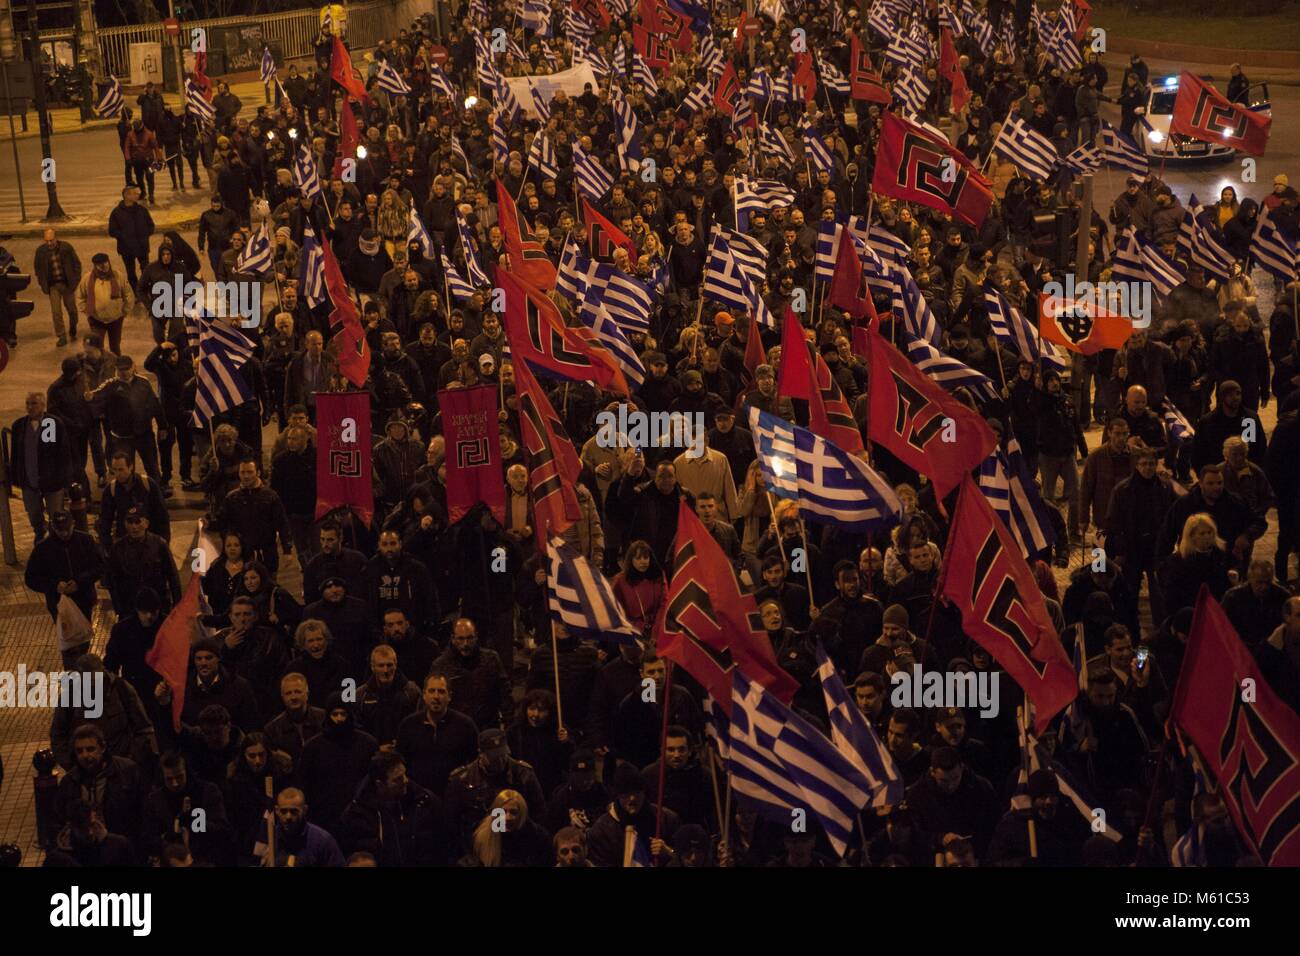 Anhänger der Griechischen Chrysi Avgi (Golden Dawn), rechtsextremen nationalistischen Partei, im März in Athen. 03.02.2018 | Verwendung weltweit Stockfoto